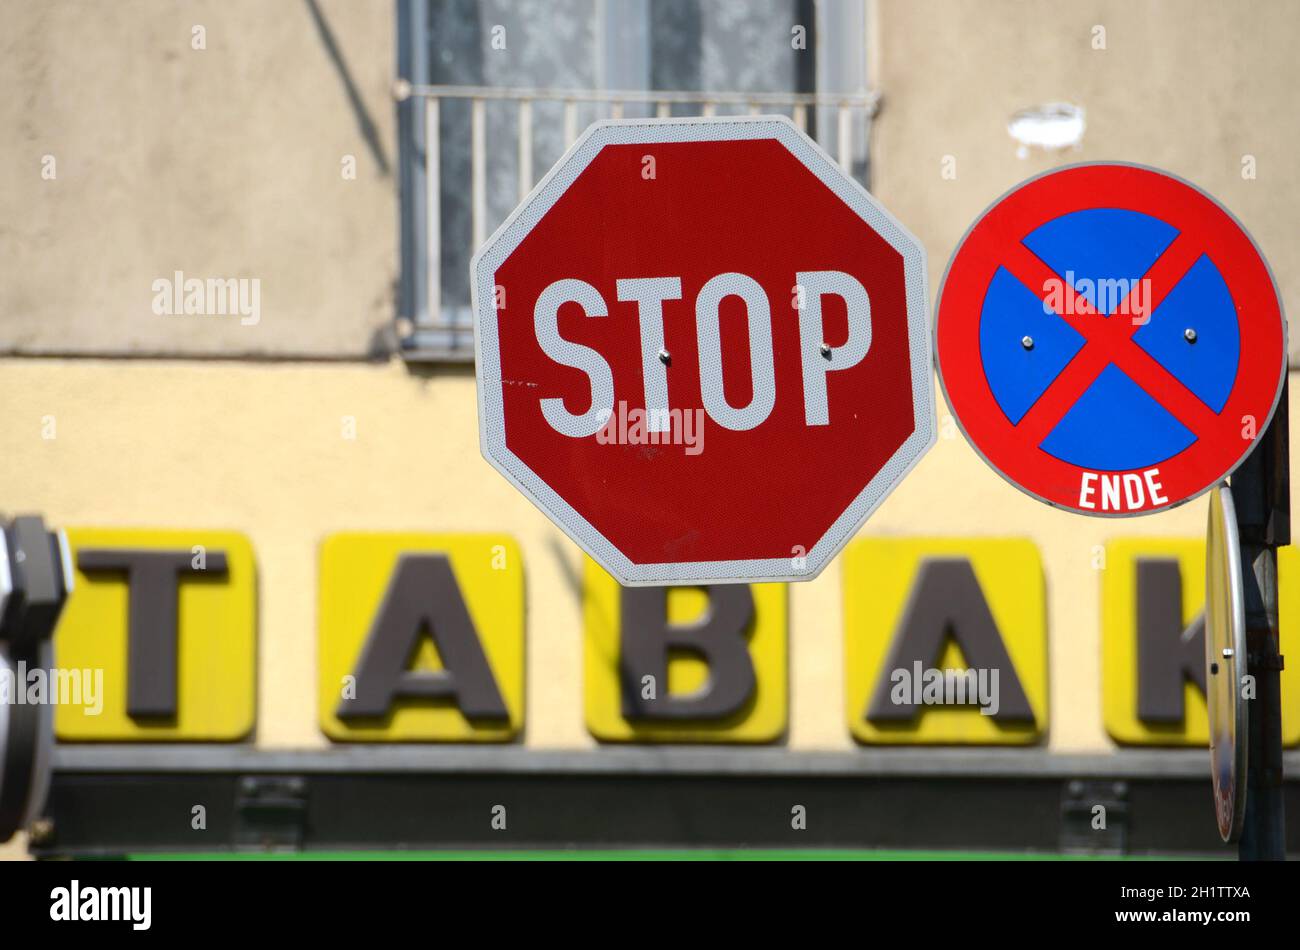 Stop-Schild vor einer Tabak-Trafik in Österreich, Europa - Stop sign in front of a tobacco shop in Austria, Europe Stock Photo